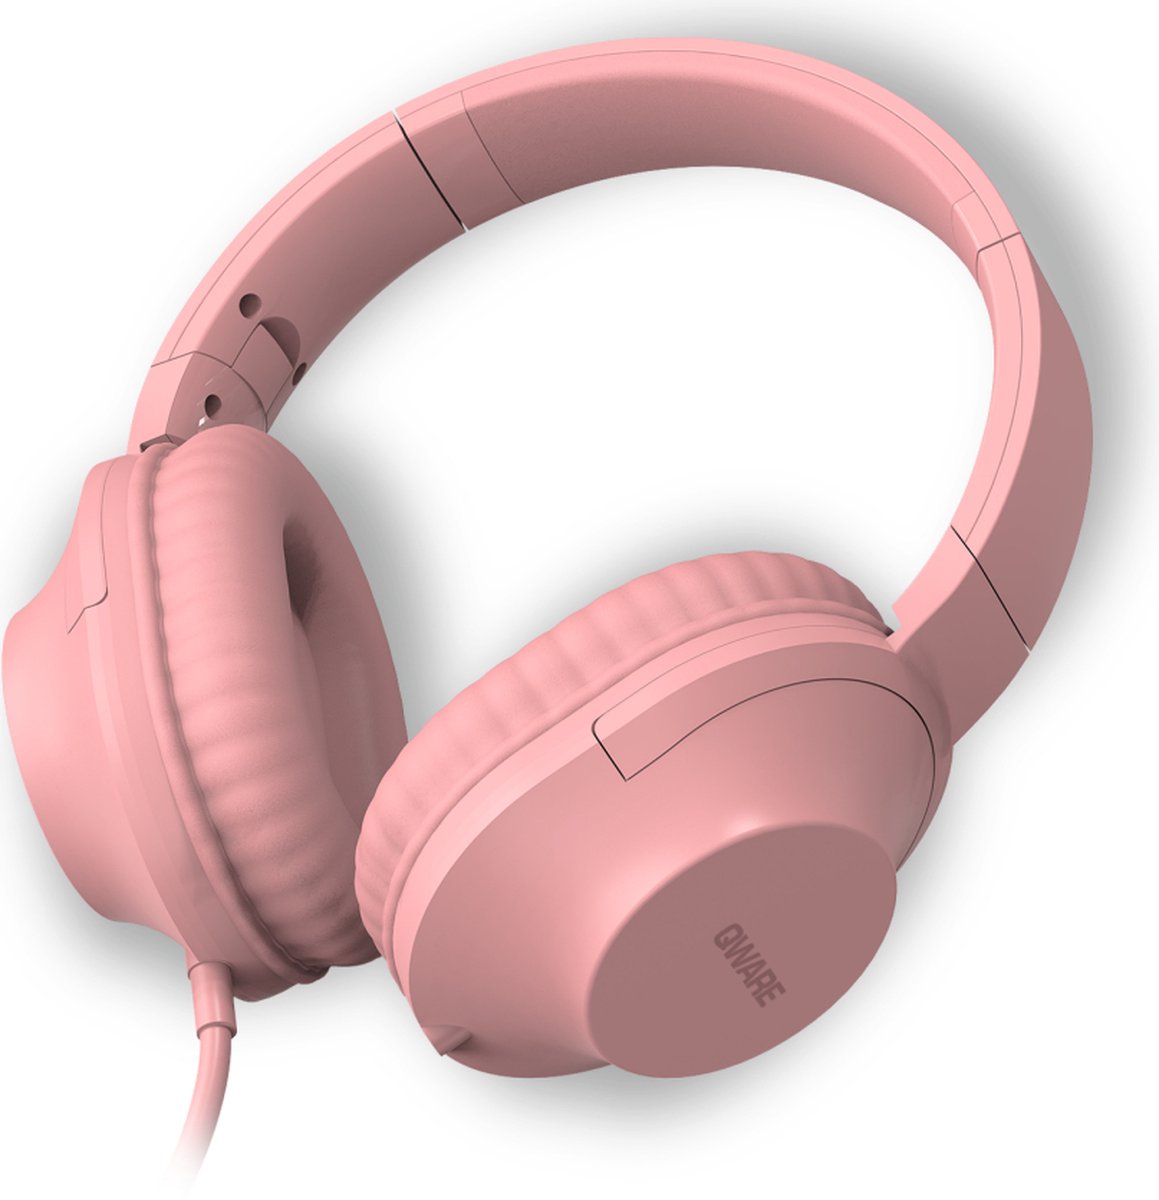 Qware Sound - Koptelefoon Kinderen – Koptelefoon Volwassenen - Koptelefoon Bedraad - Wired - Kabel - Headphone - Roze